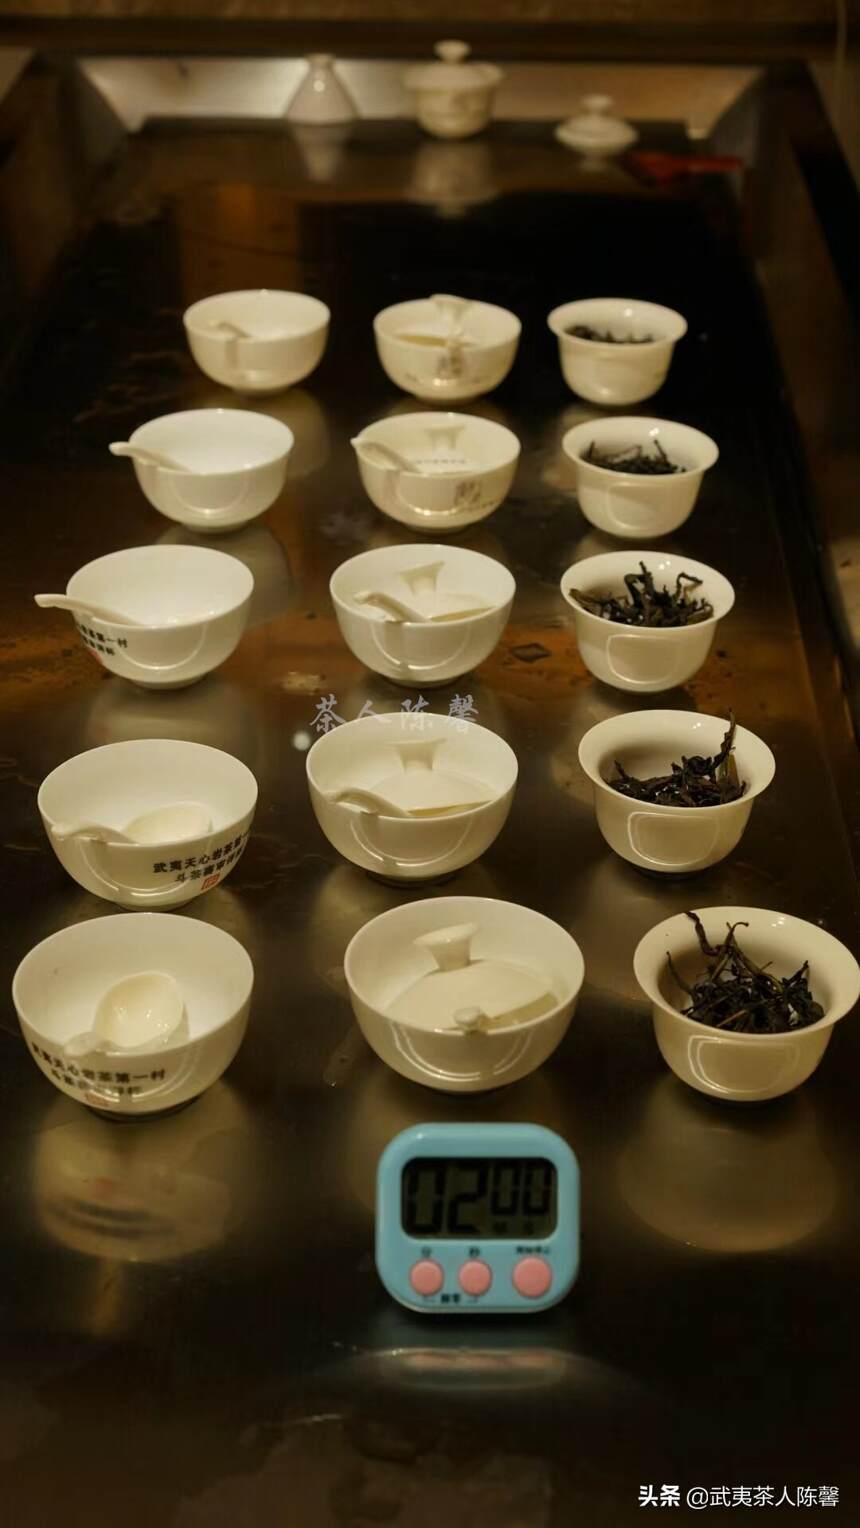 冲泡武夷岩茶有哪些小技巧呢？